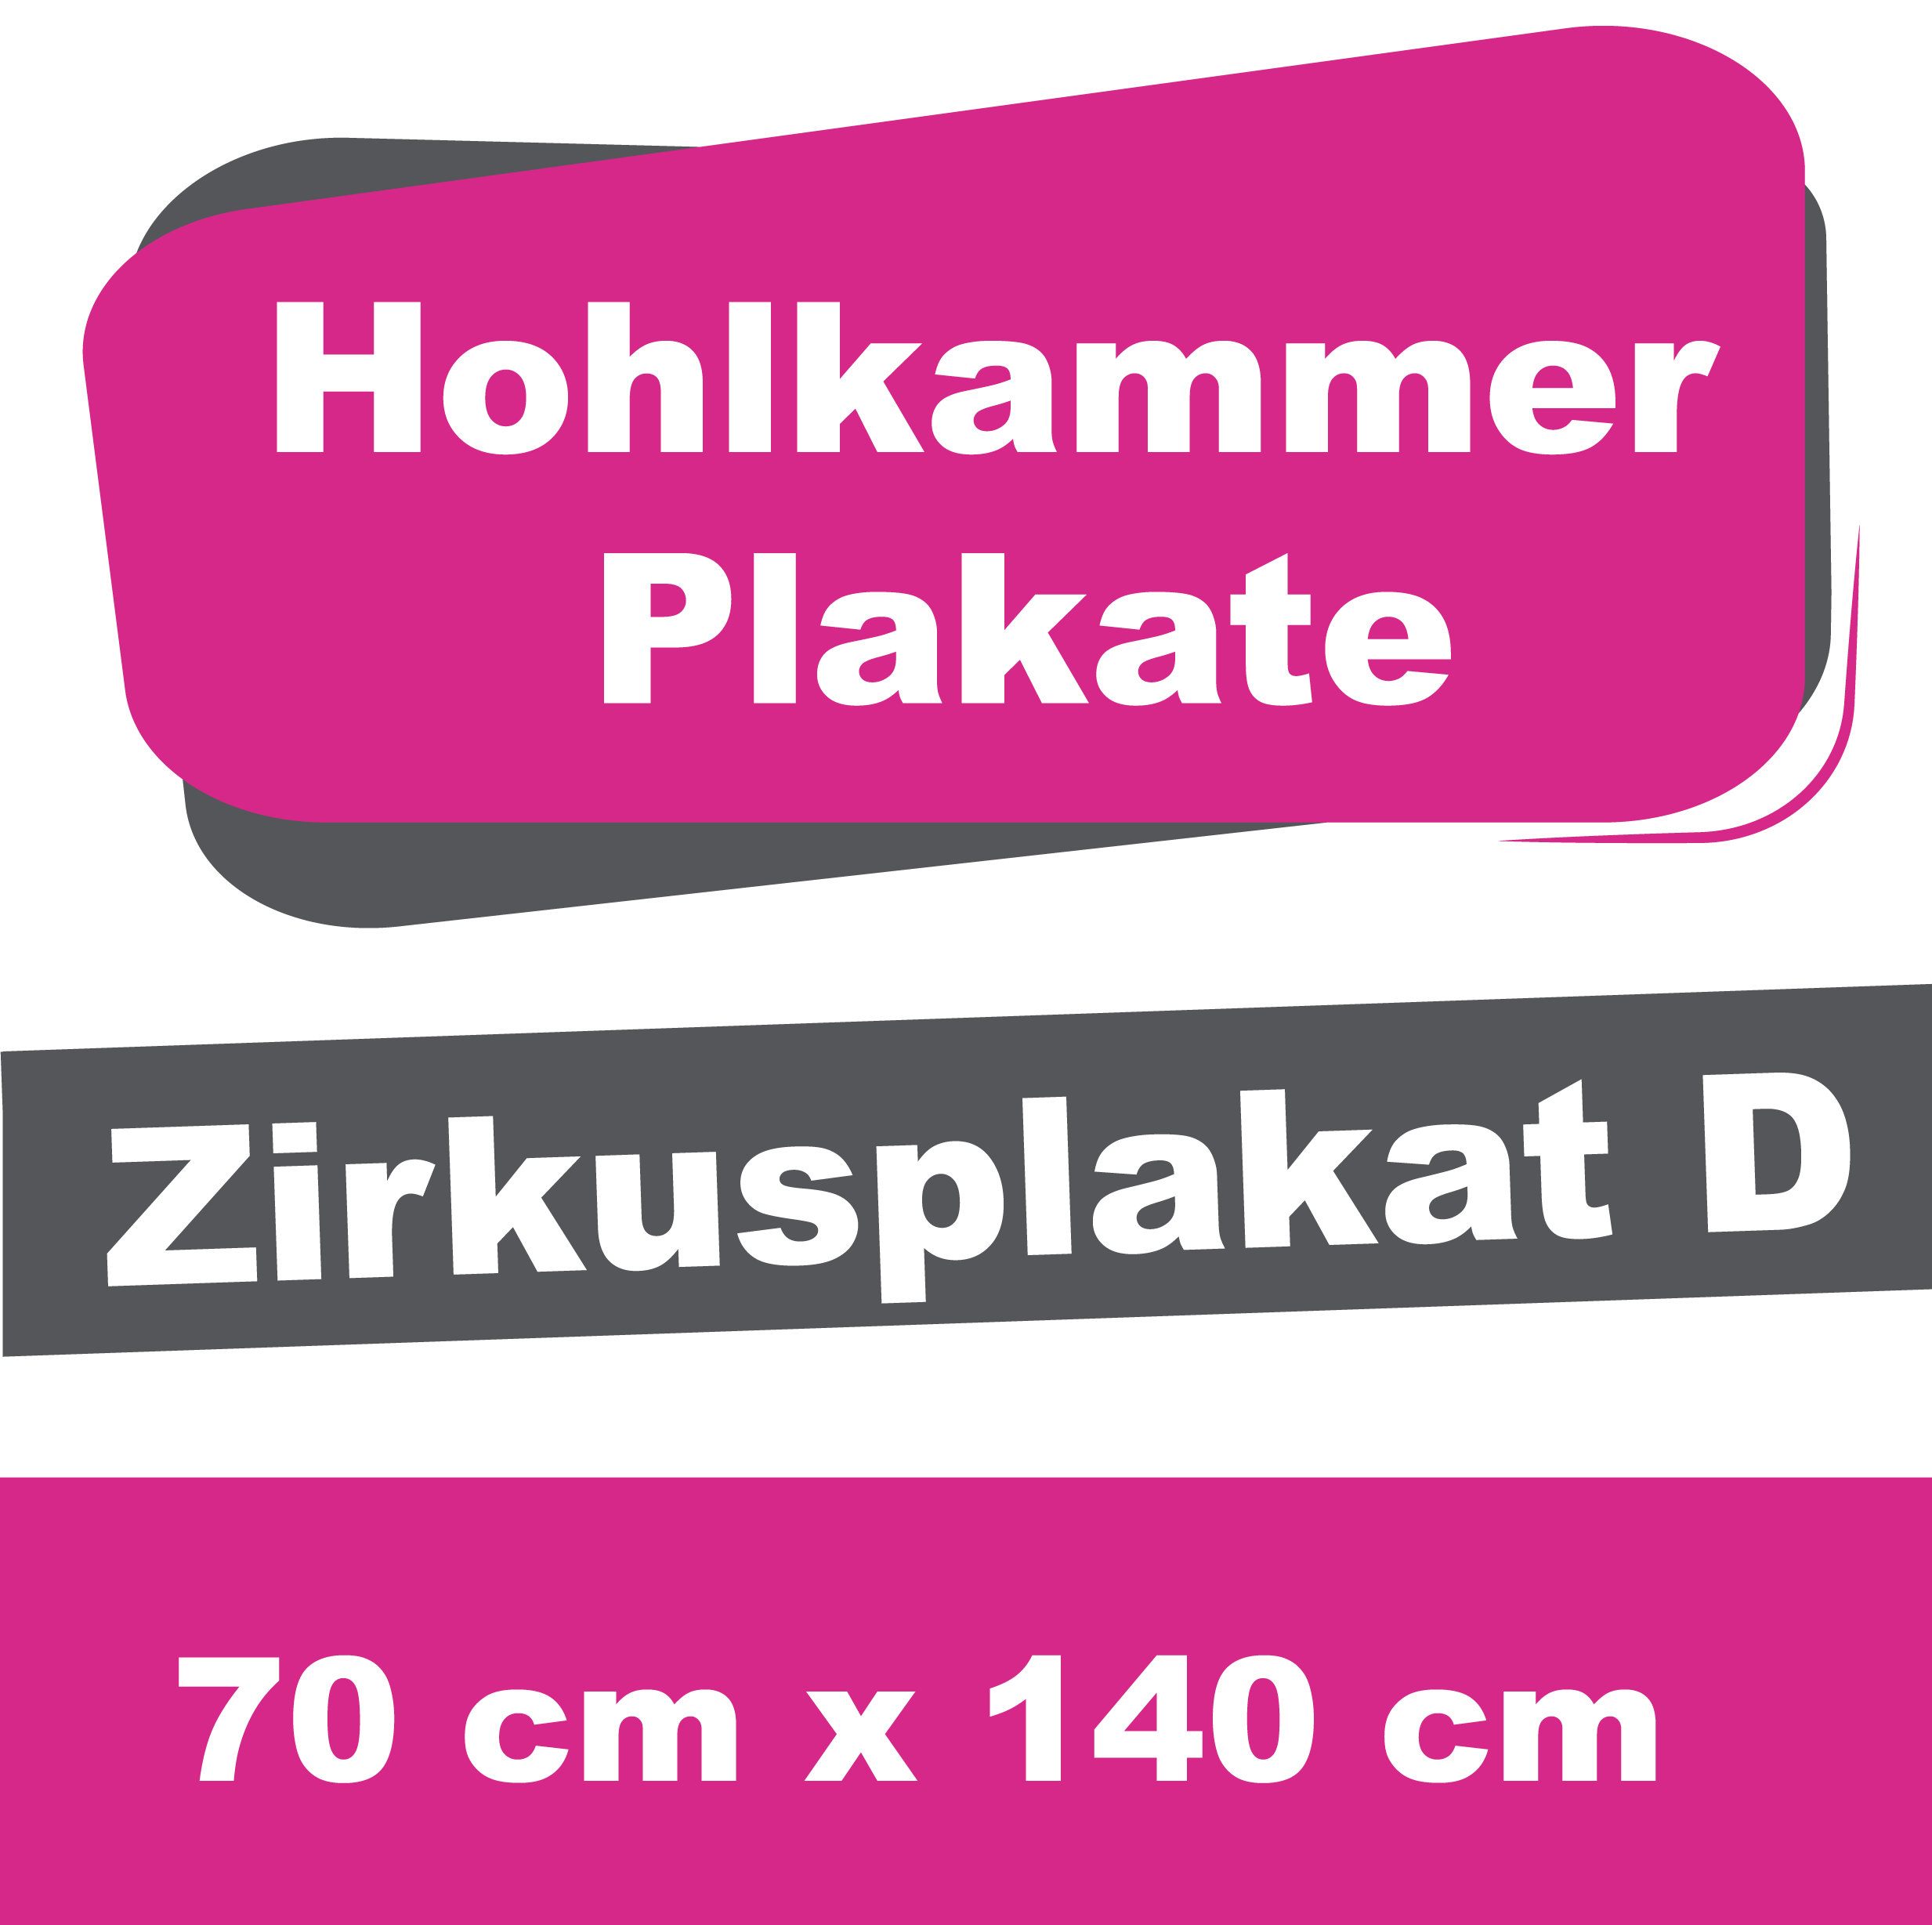 Wahl-/Event-/Zirkusplakat D - Hohlkammerplakate 70 x 140 cm 